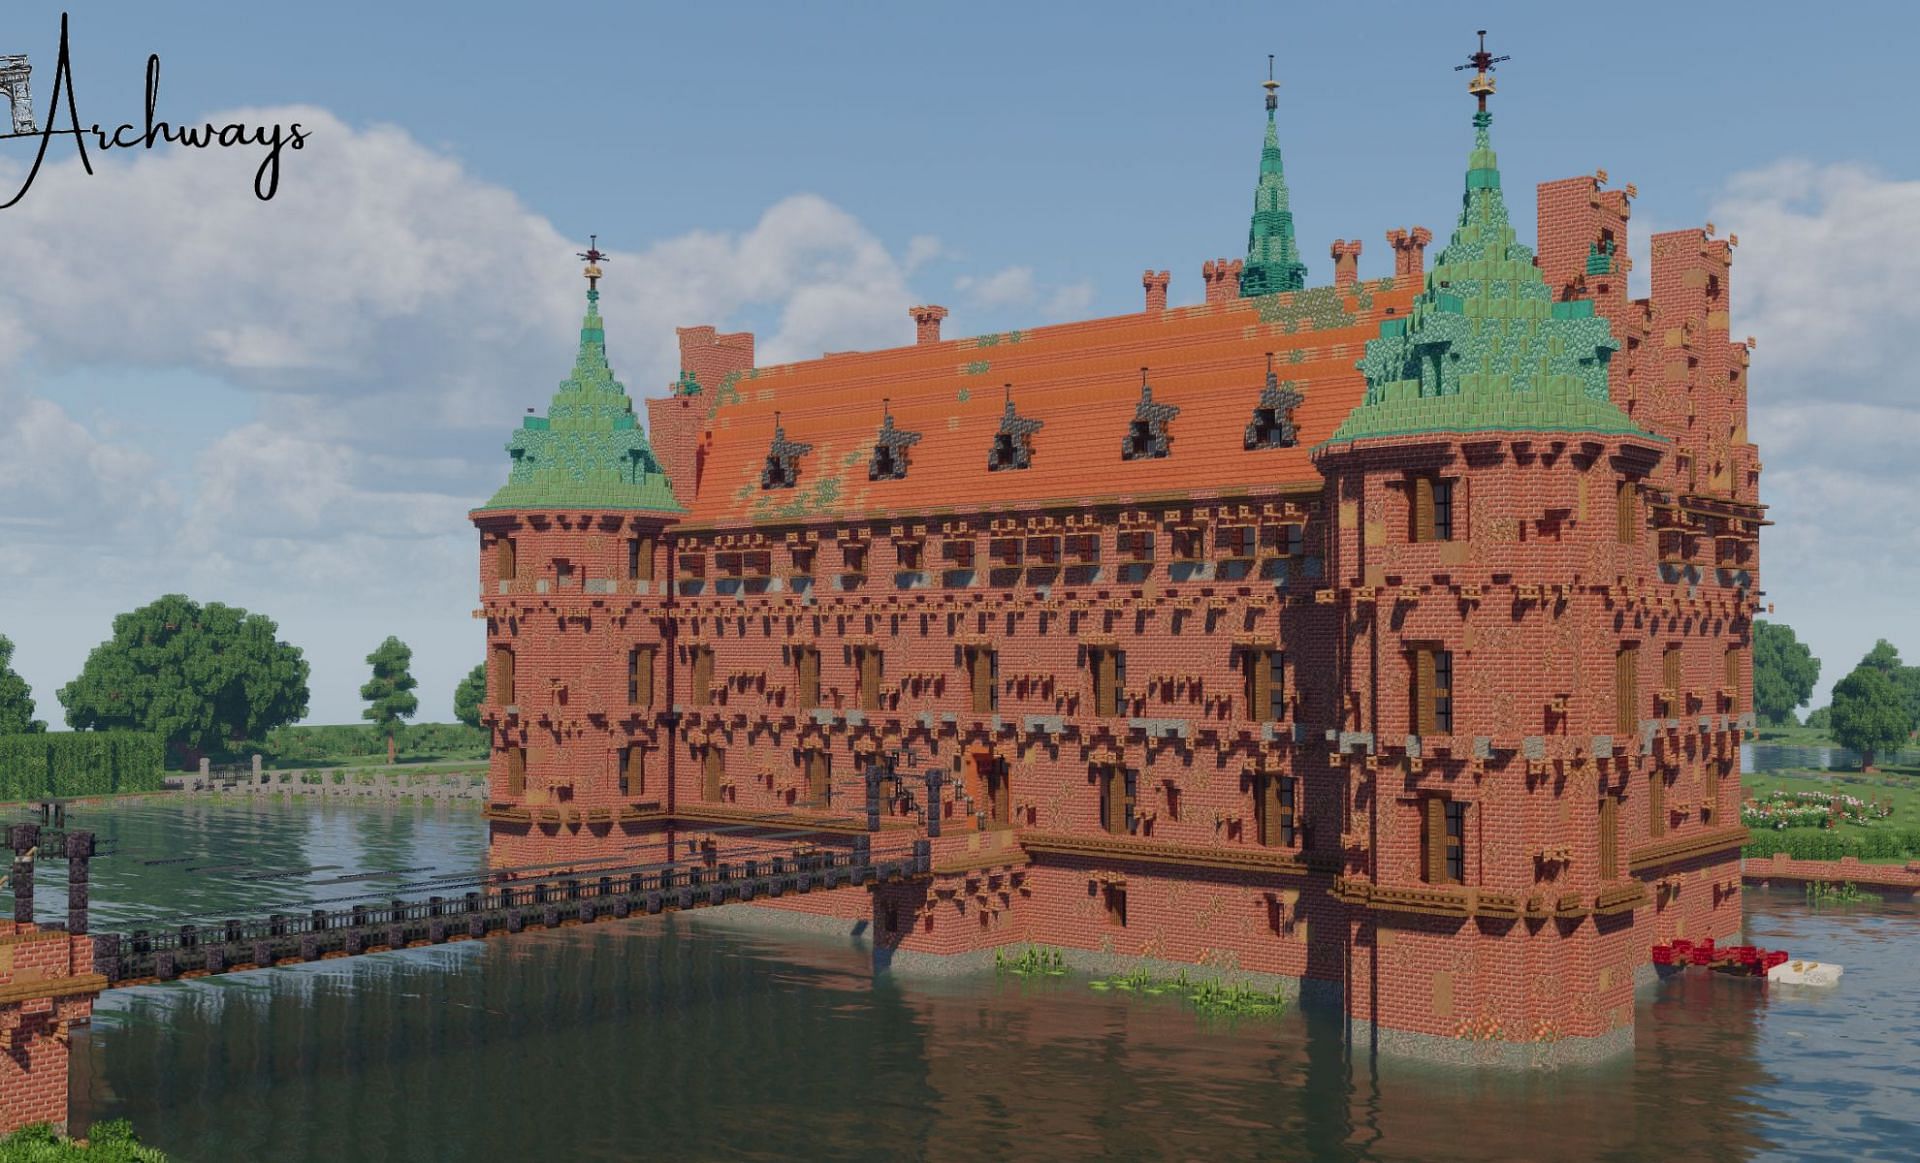 The Egeskov Castle build (Image via u/g00nk on Reddit)